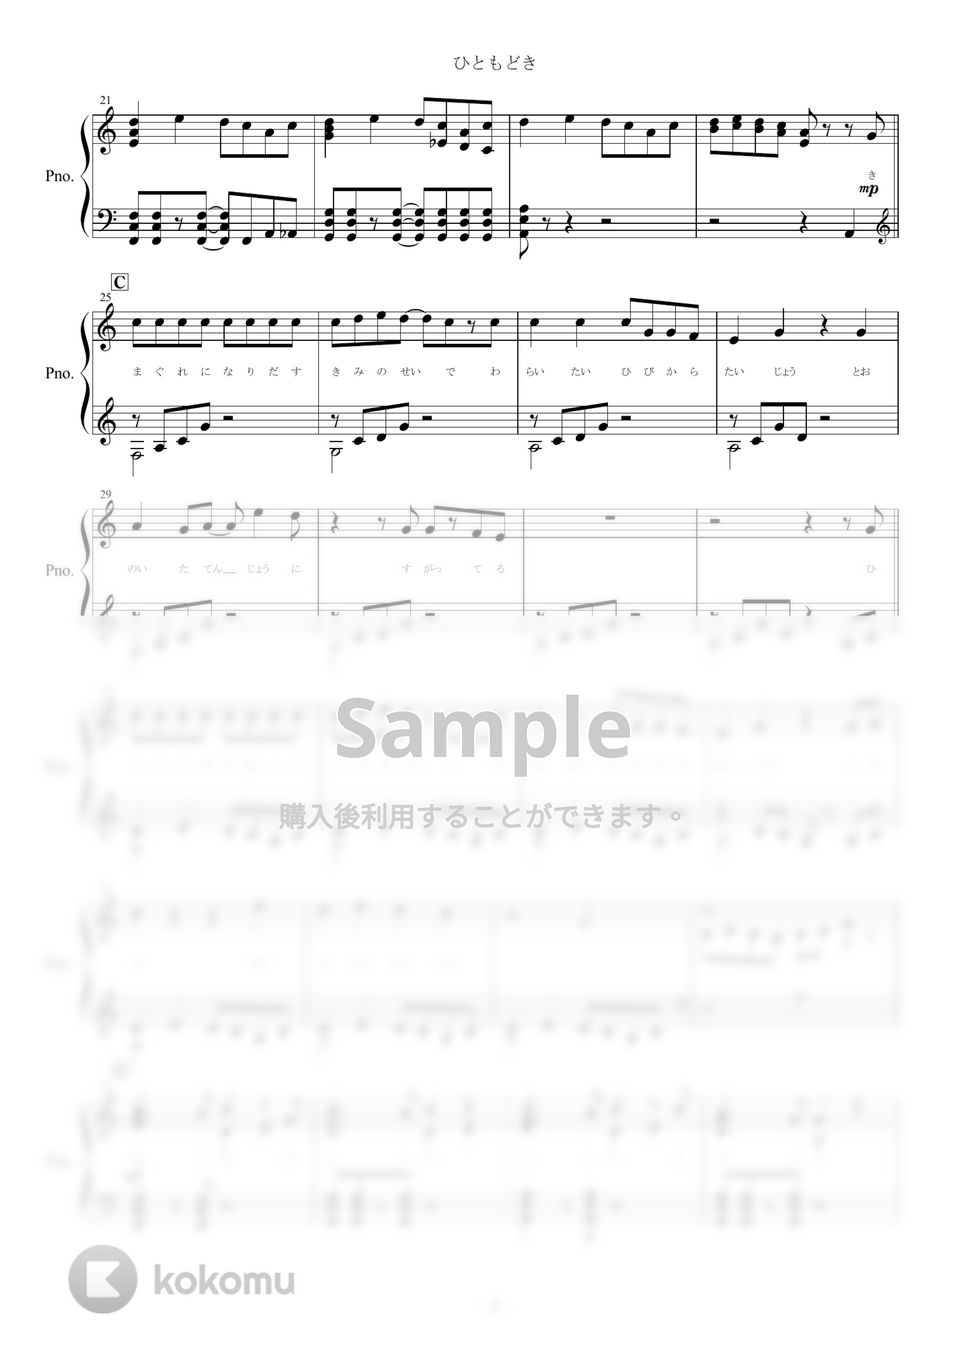 まふまふ - ひともどき (ピアノ楽譜/全９ページ) by yoshi